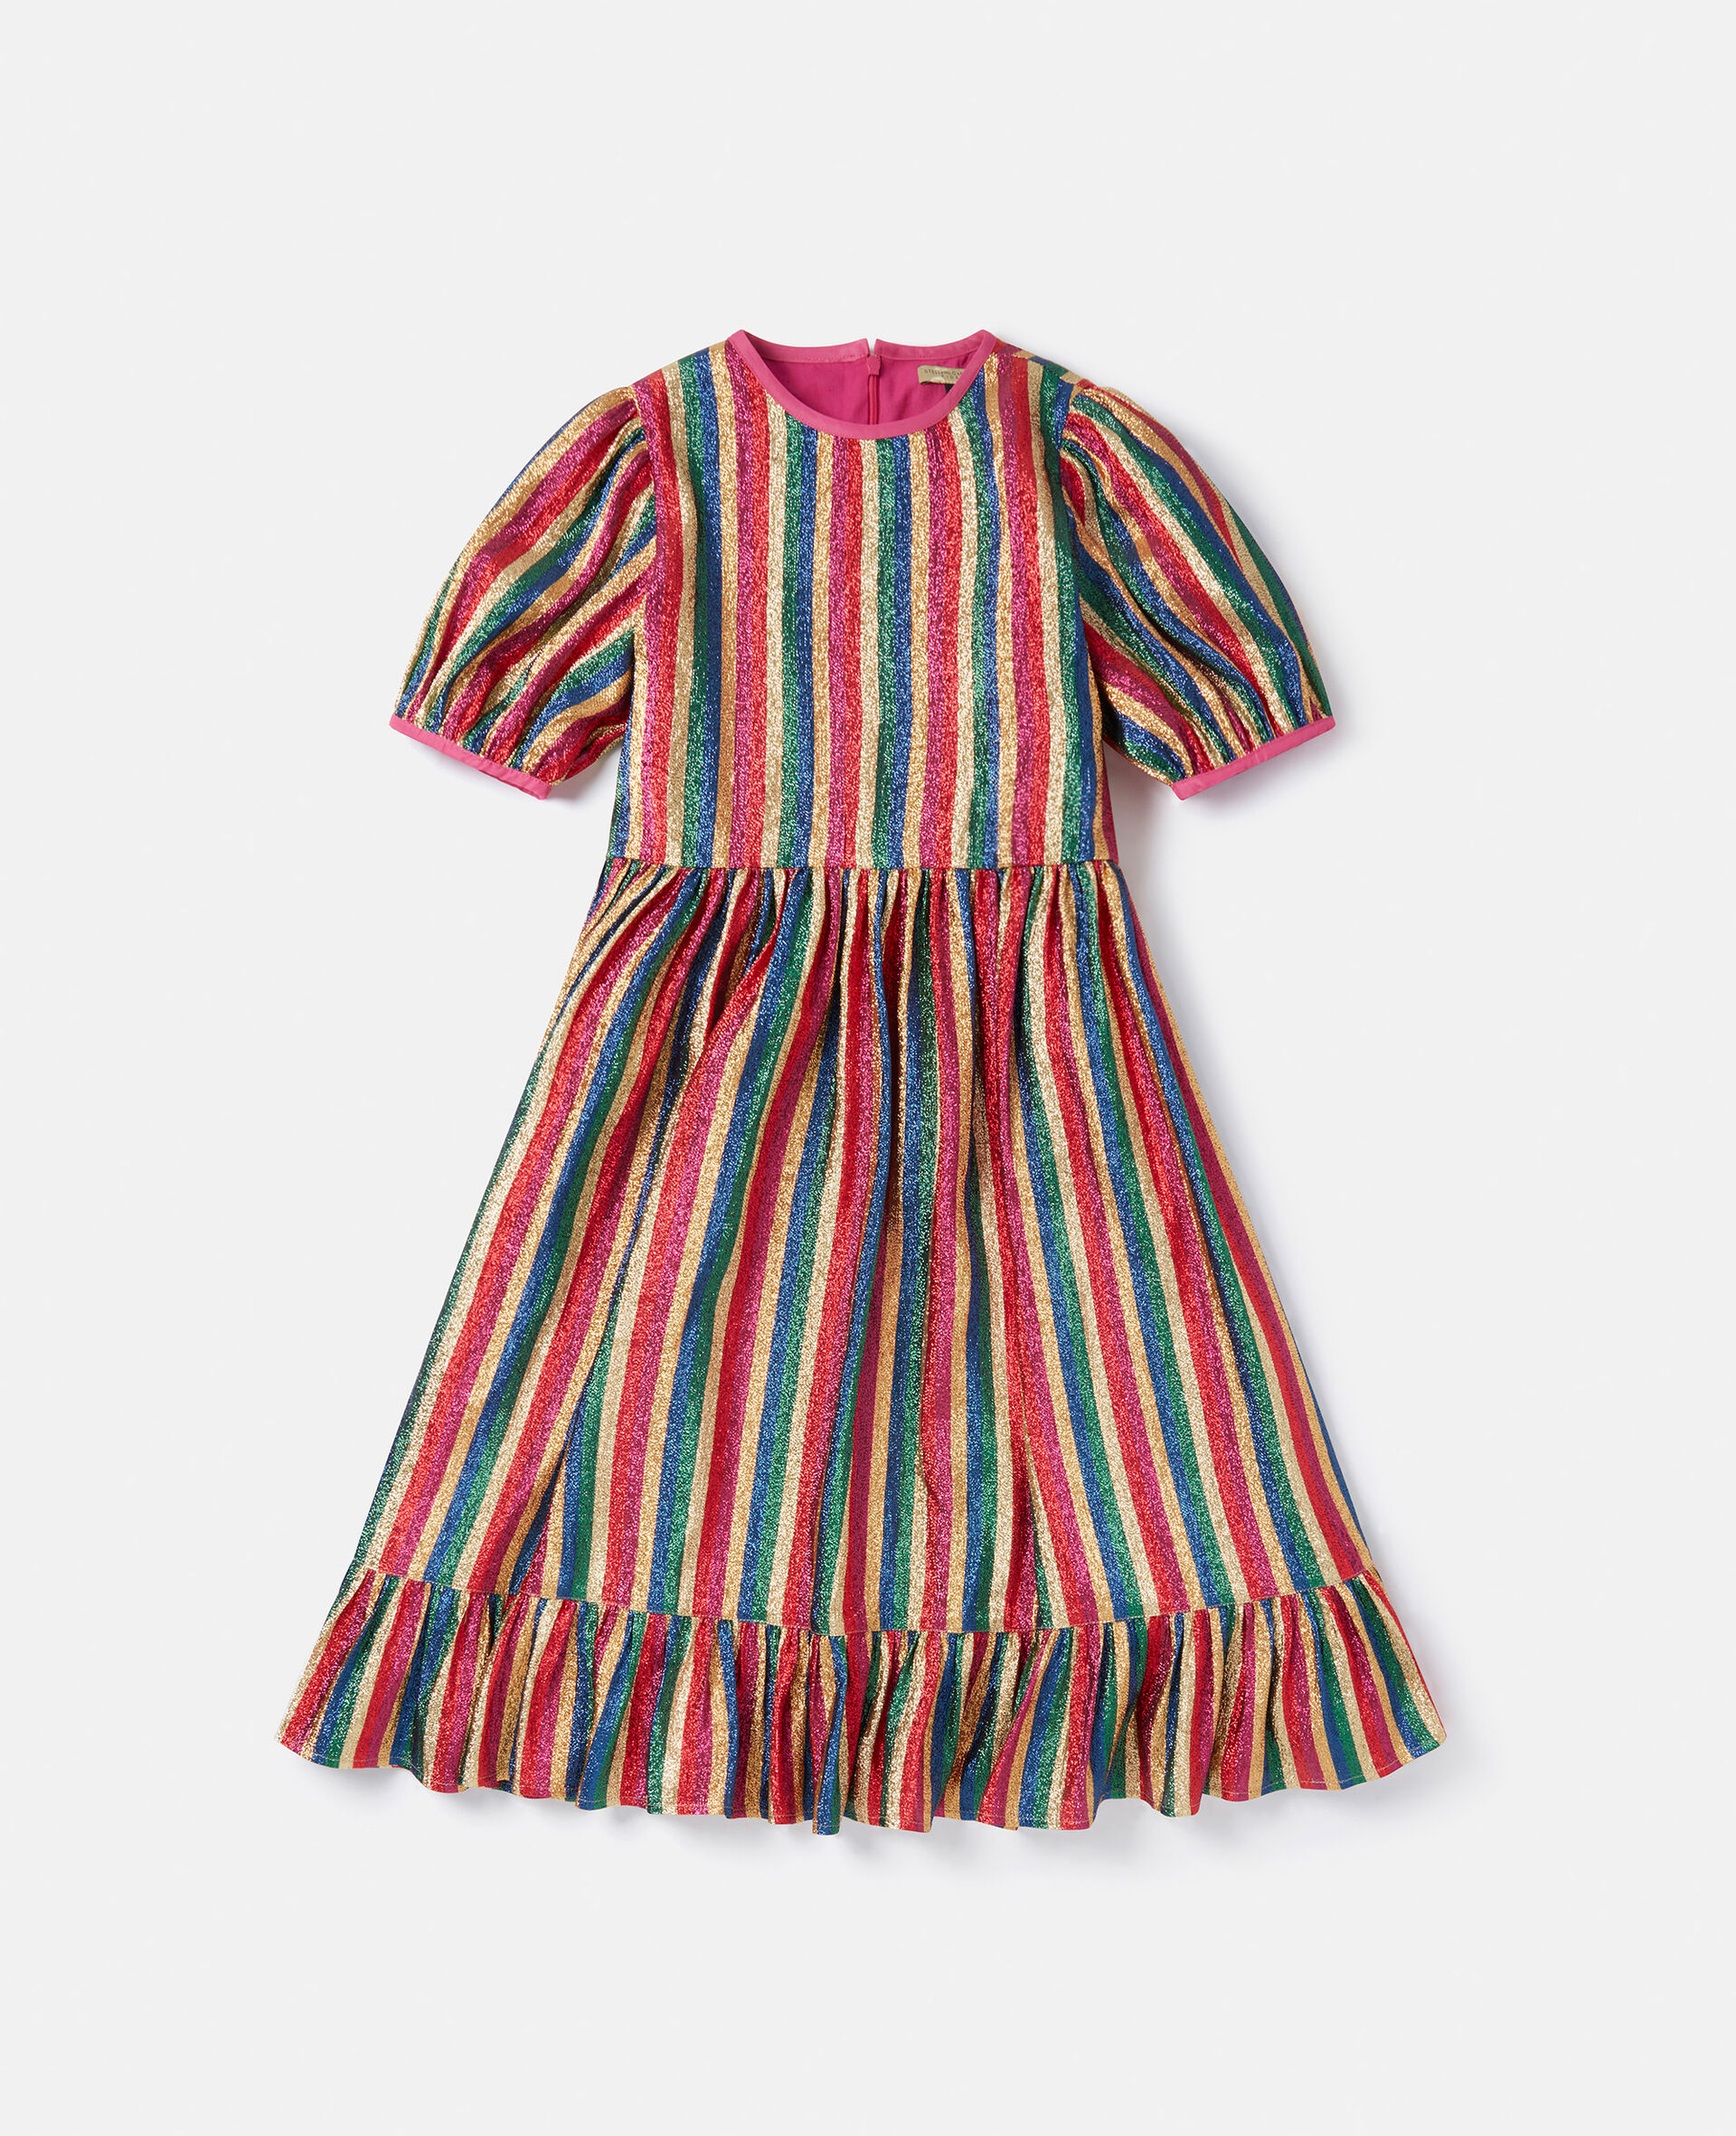 Metallic Rainbow Stripe Dress-Multicoloured-large image number 0